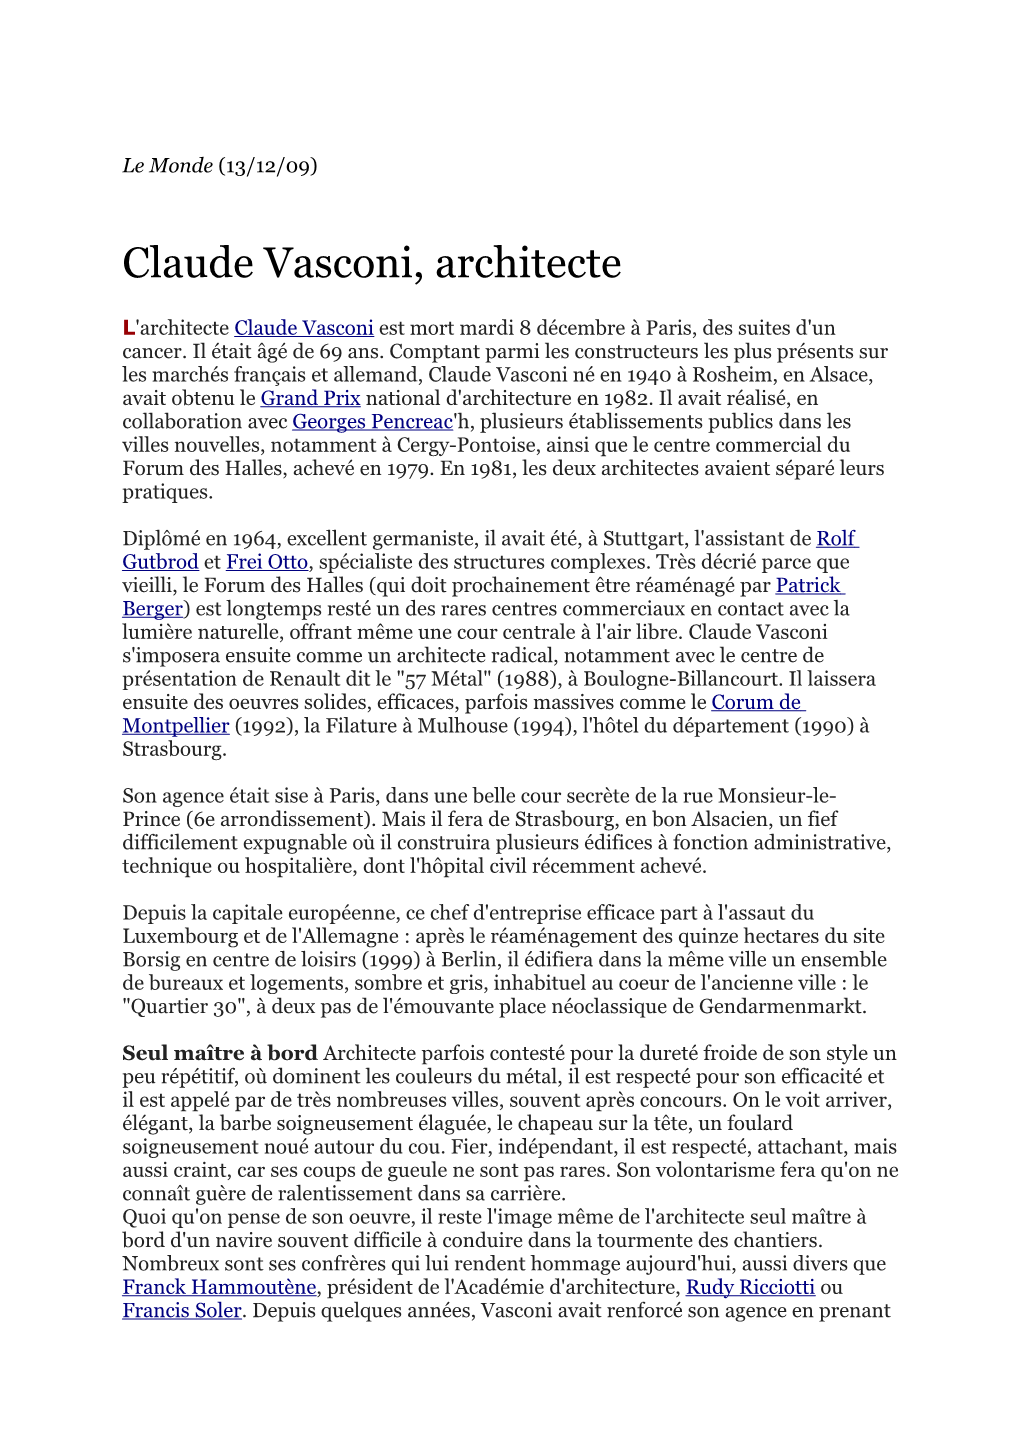 Claude Vasconi, Architecte